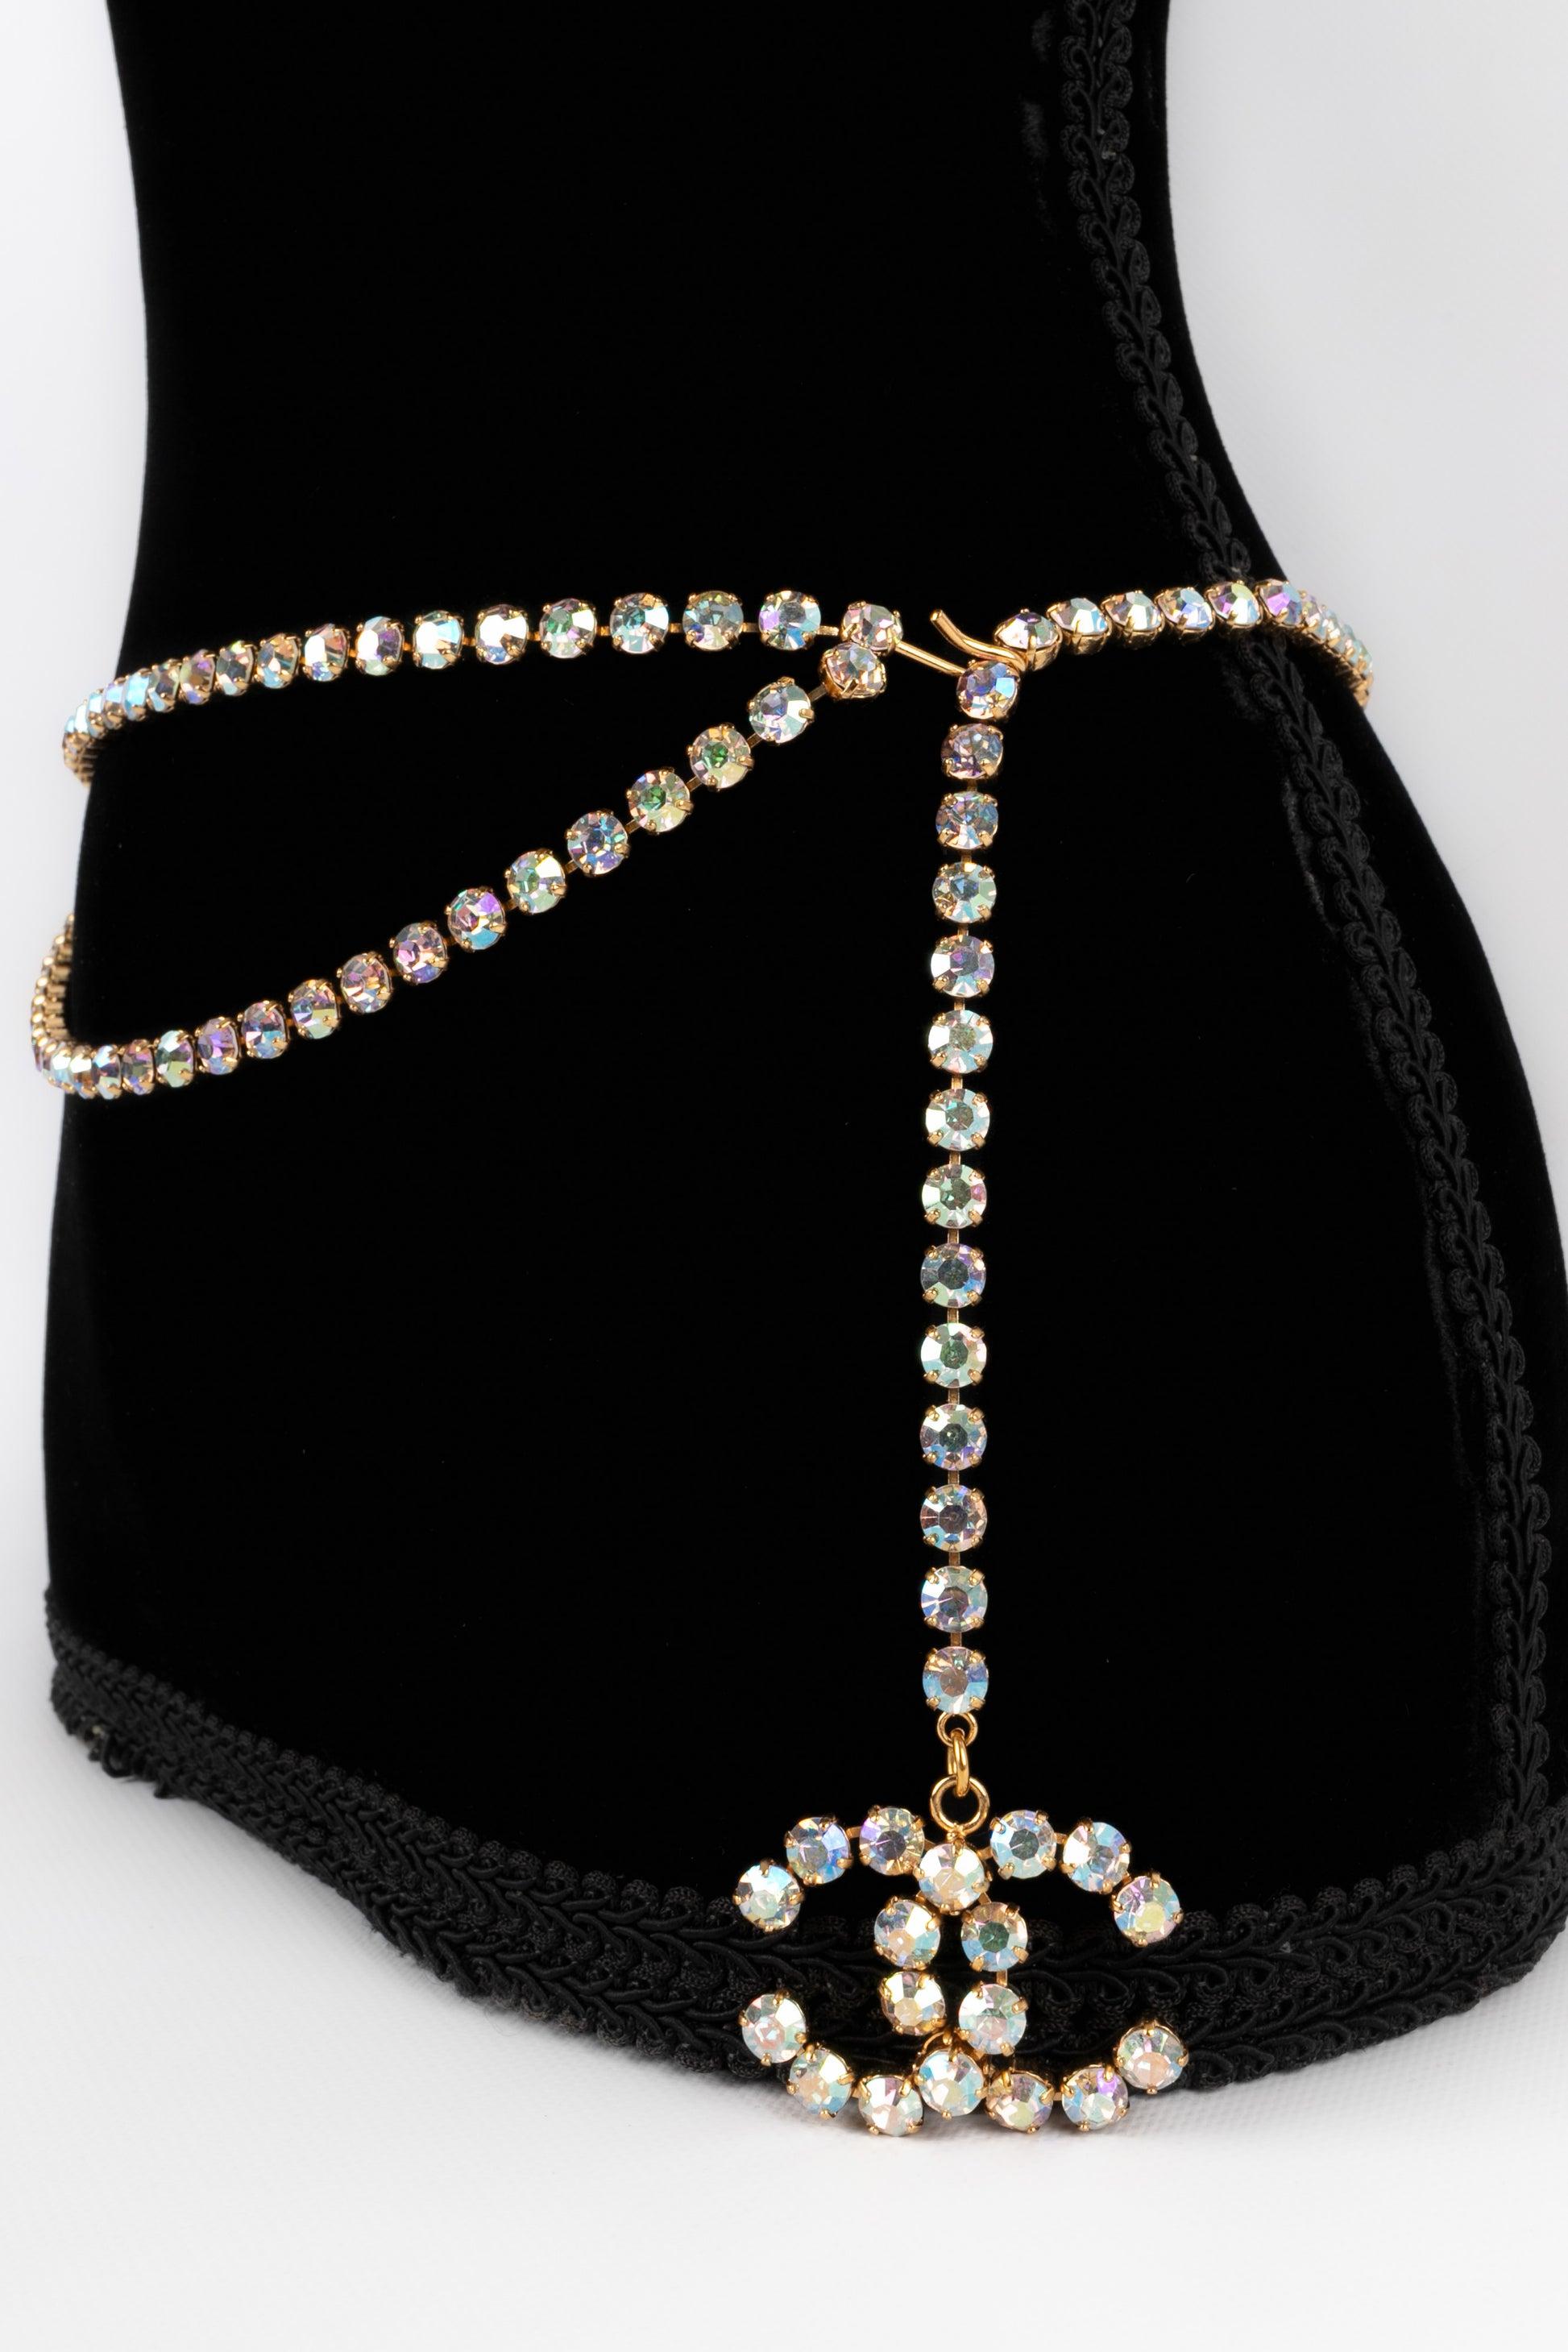 Women's Chanel Golden Metal Belt with Rhinestones, 1995 For Sale